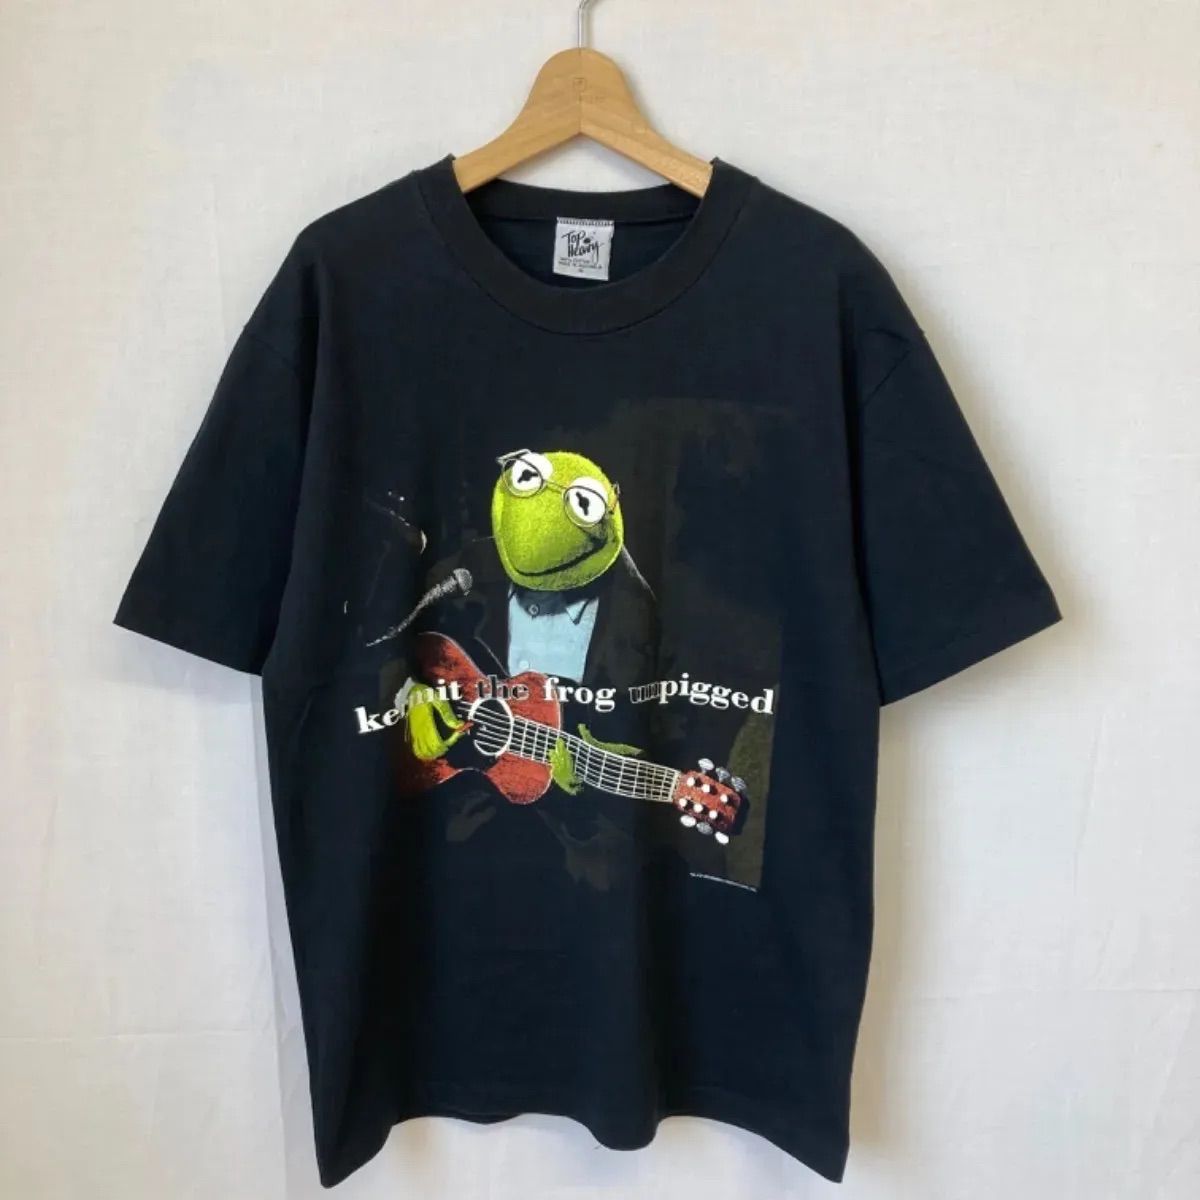 kermit the frog unpigged カーミット コットン Tシャツ ギター ブラック 黒 オーストラリア JIM HENSON MM